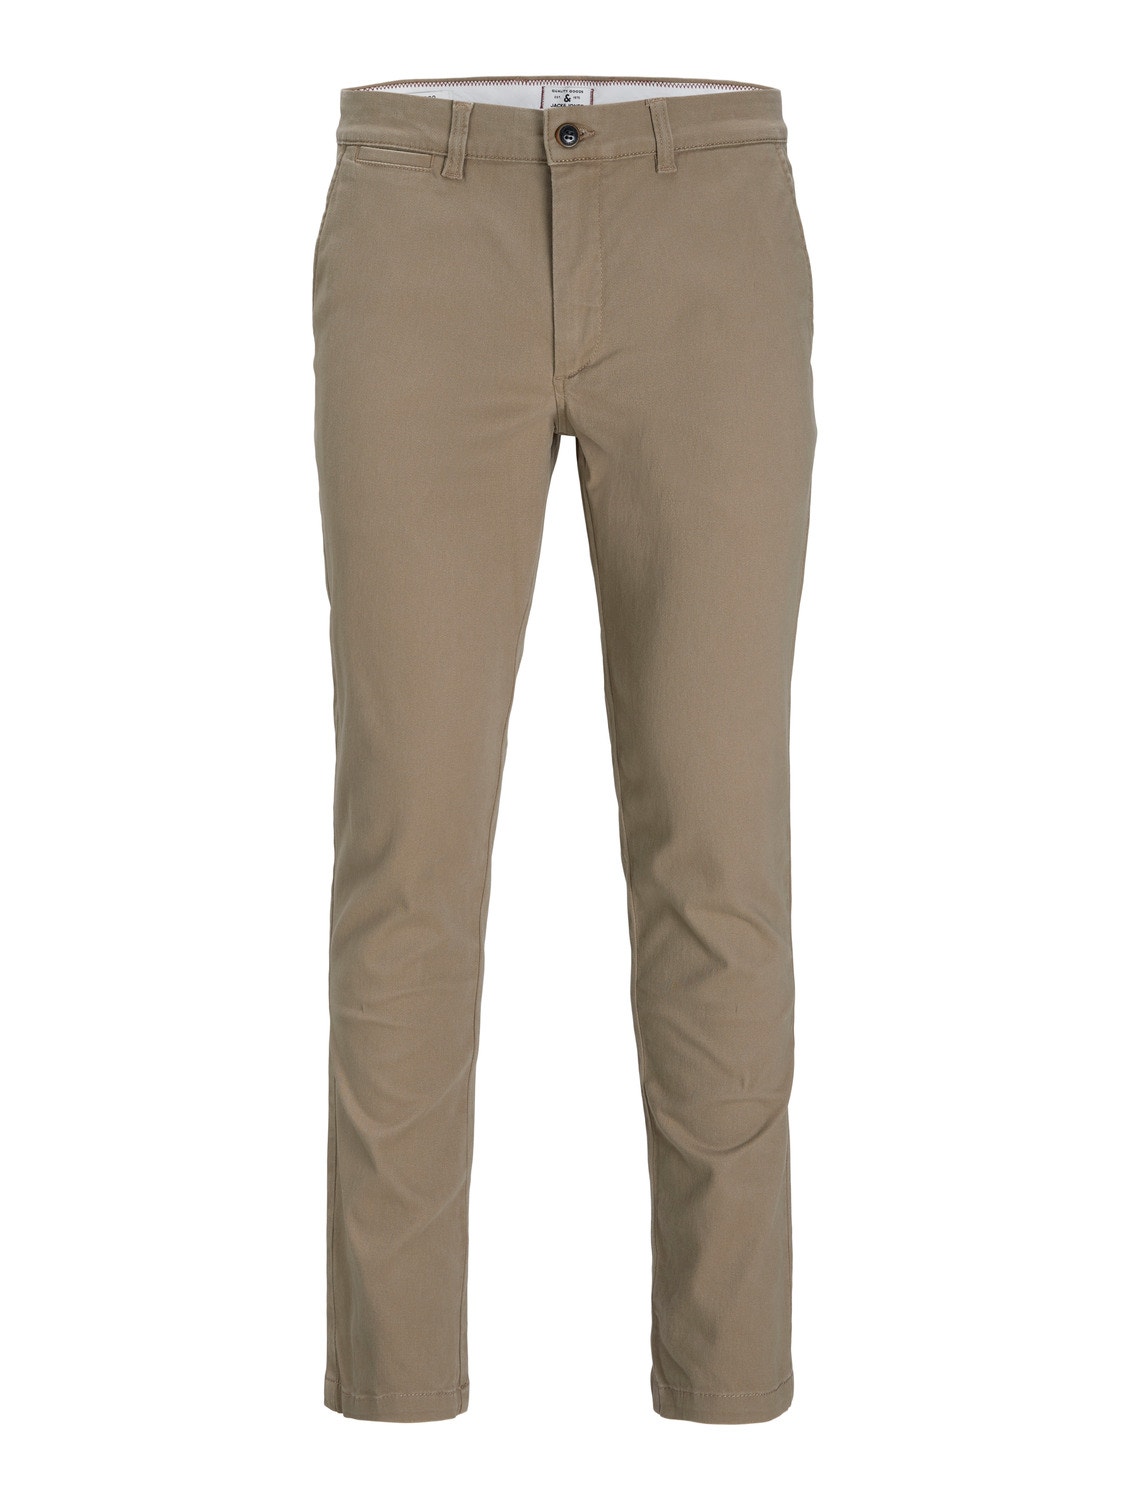 Jack & Jones Pantalones chinos Slim Fit -Beige - 12174307